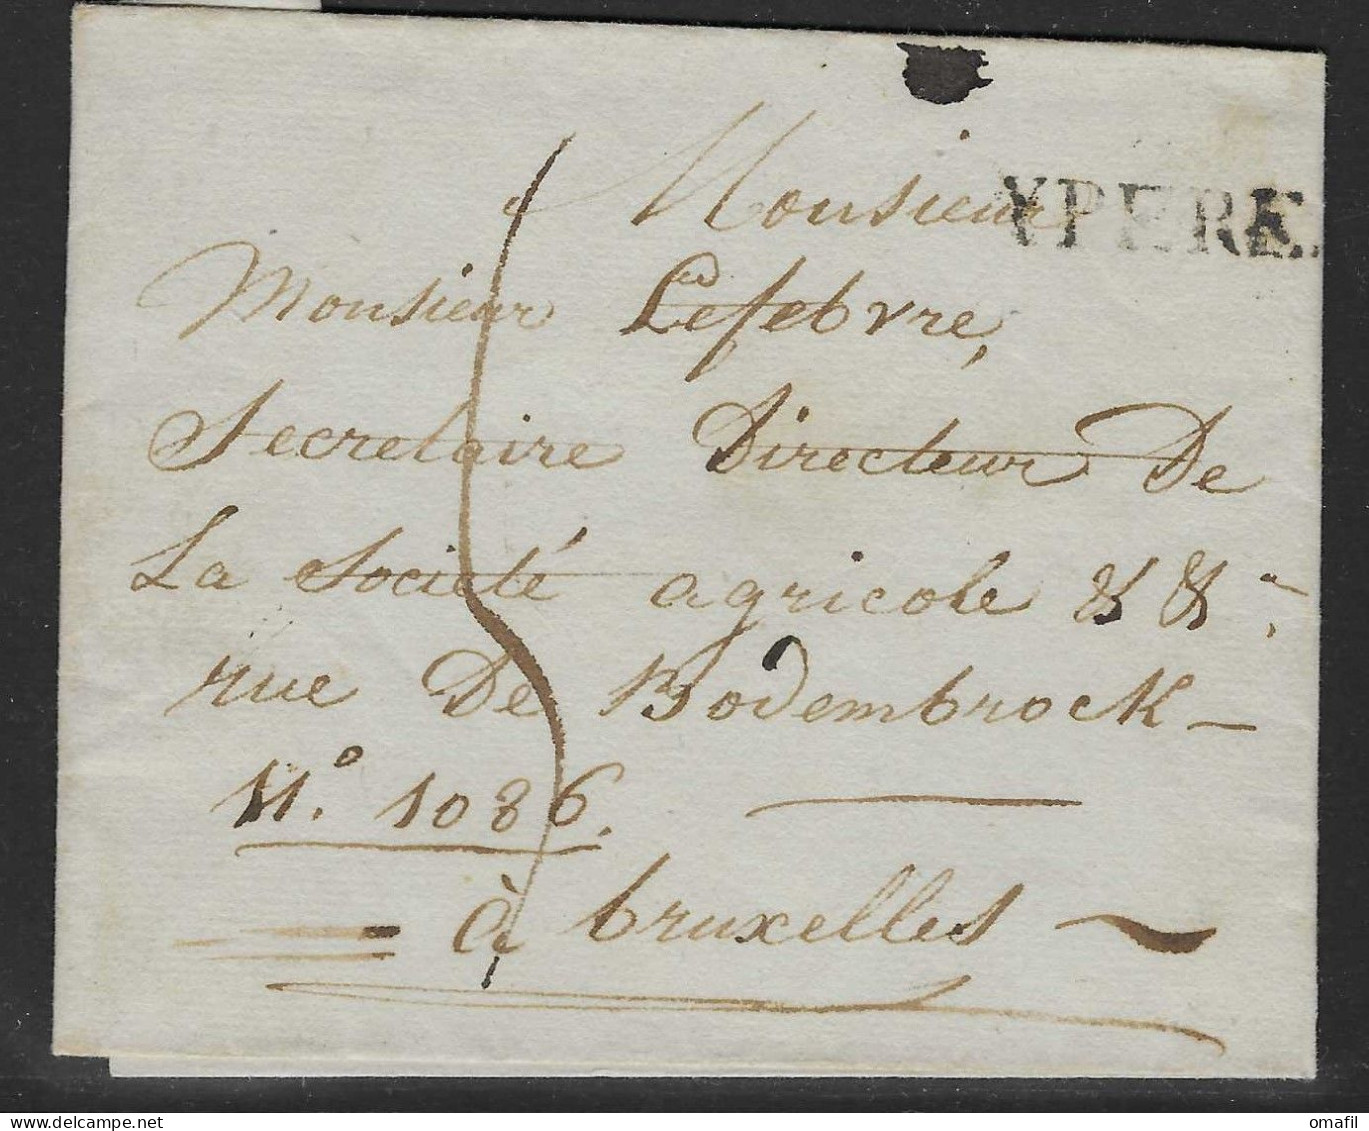 Voorloper Verstuurd Uit Ypere Naar Bruxelles - 1714-1794 (Pays-Bas Autrichiens)